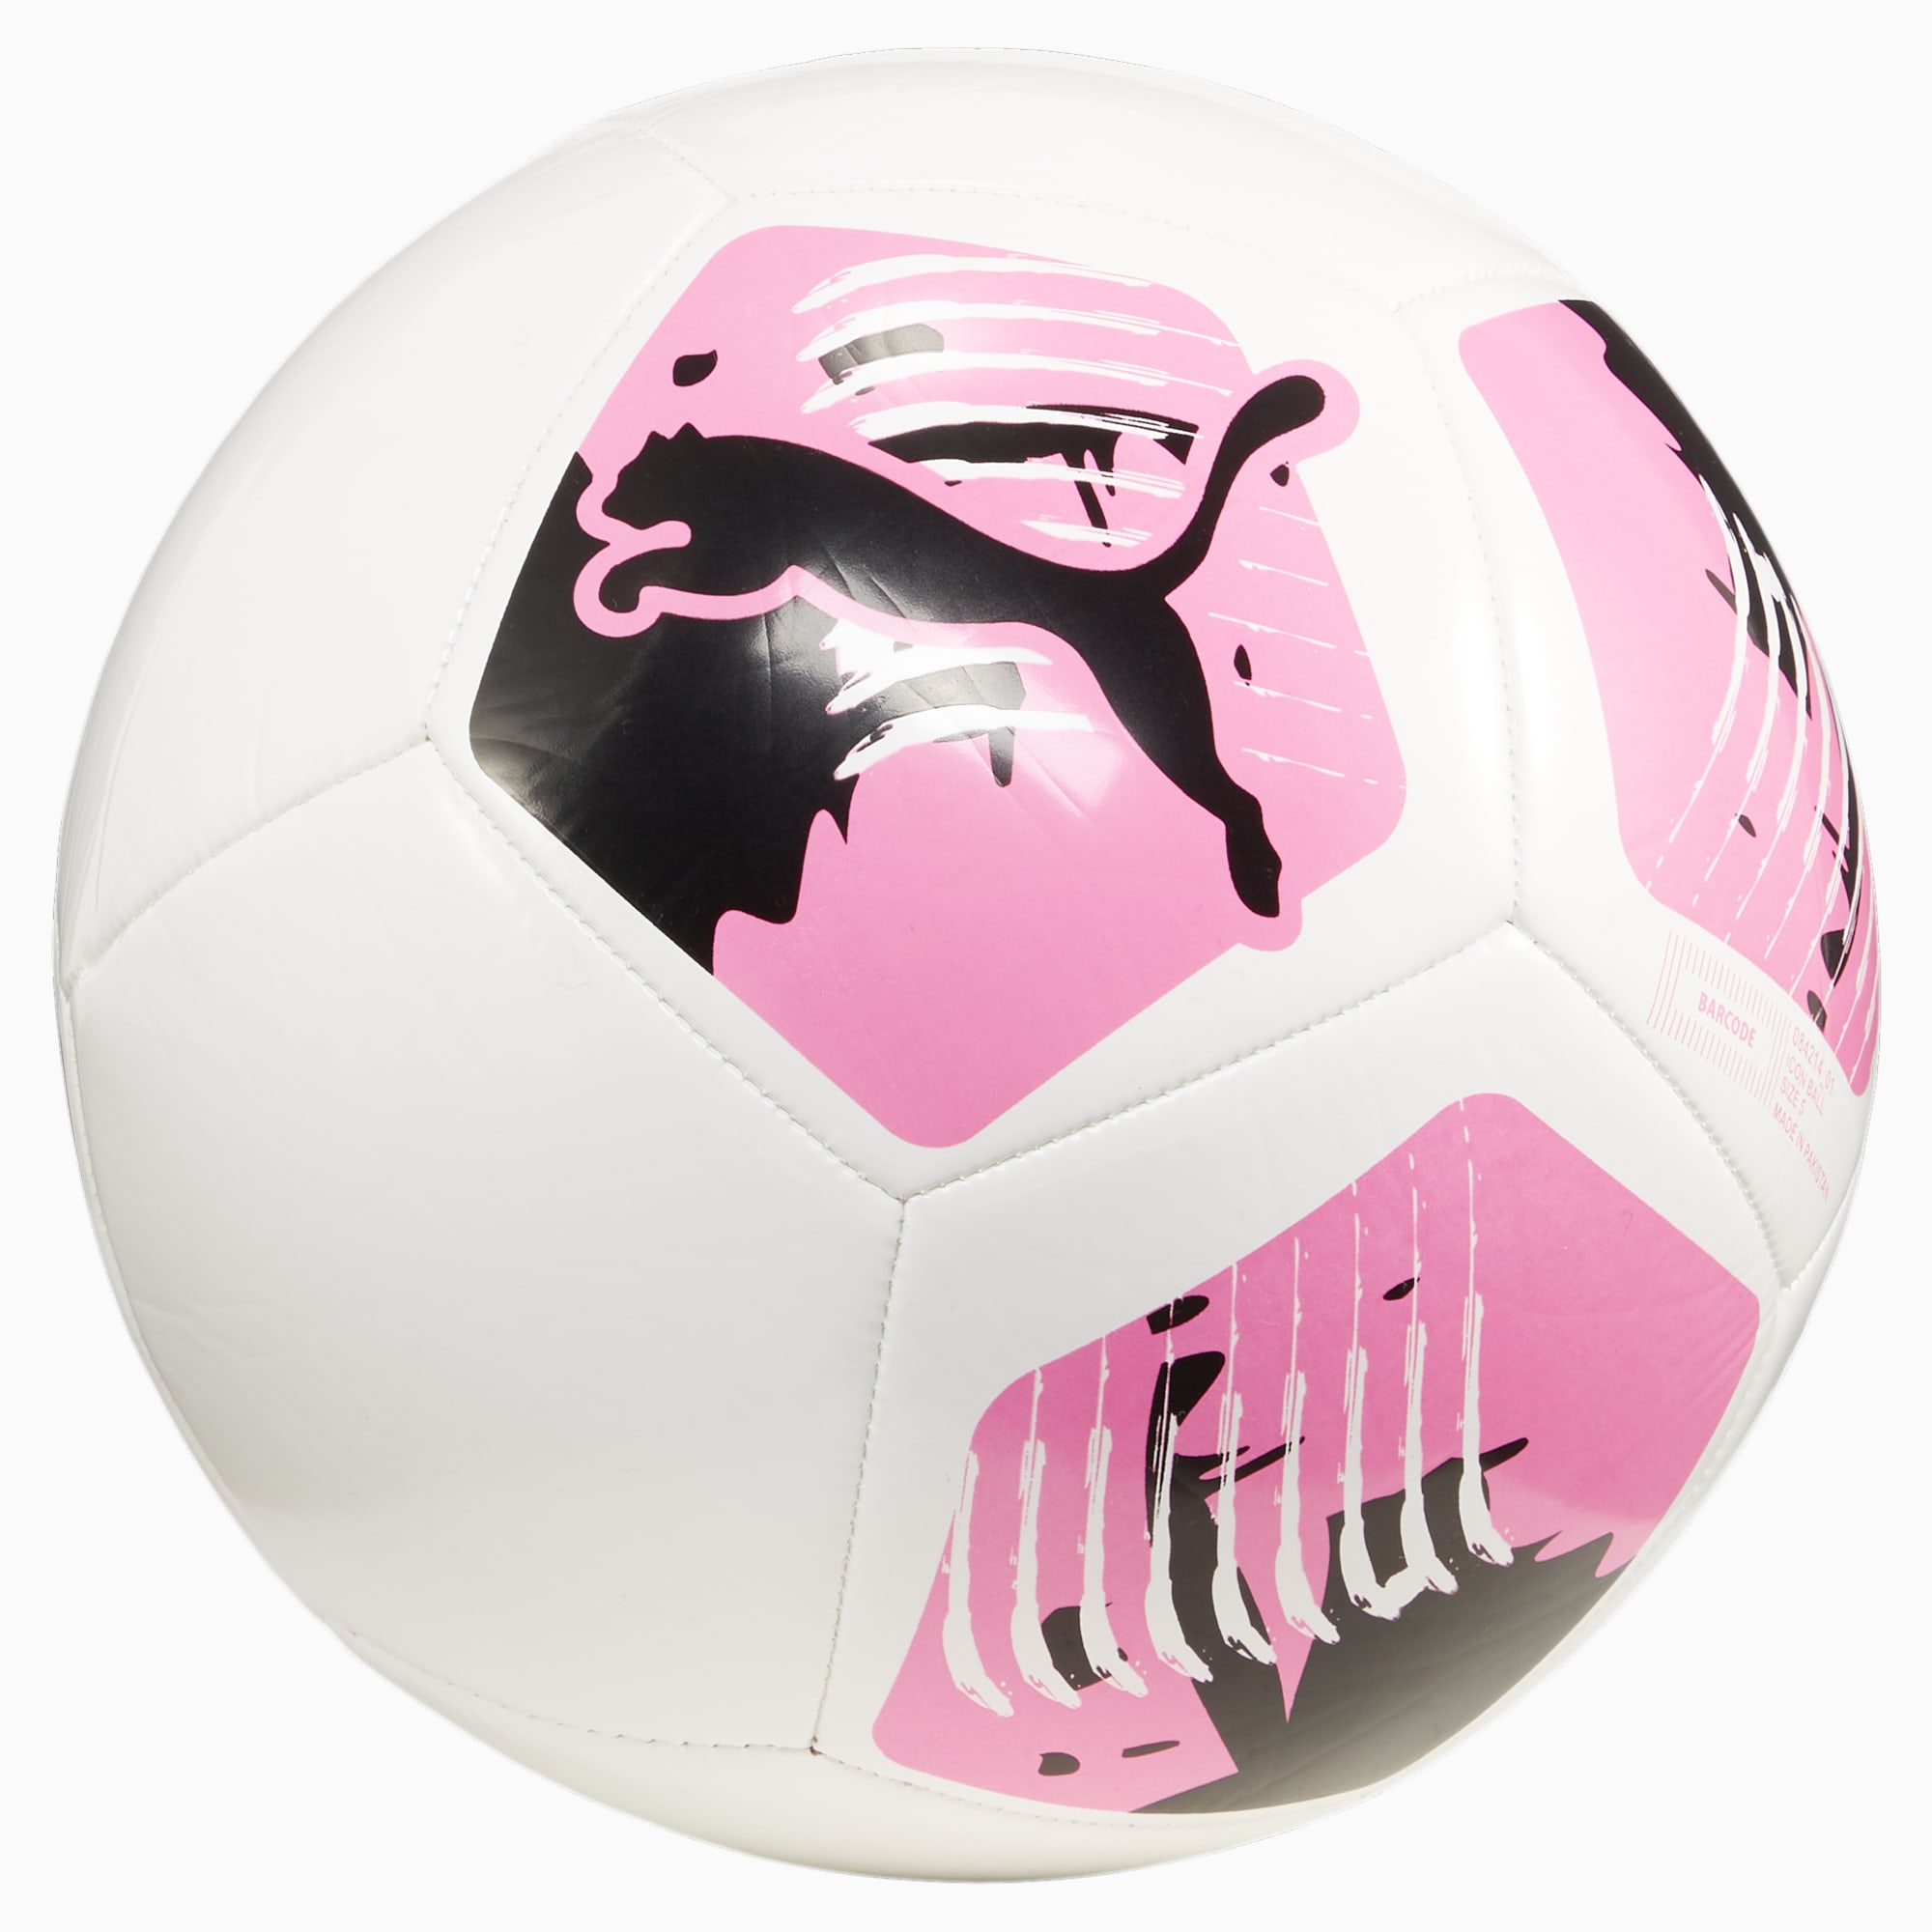 PUMA Big Cat Voetbal Voor Dames, Wit/Roze/Zwart